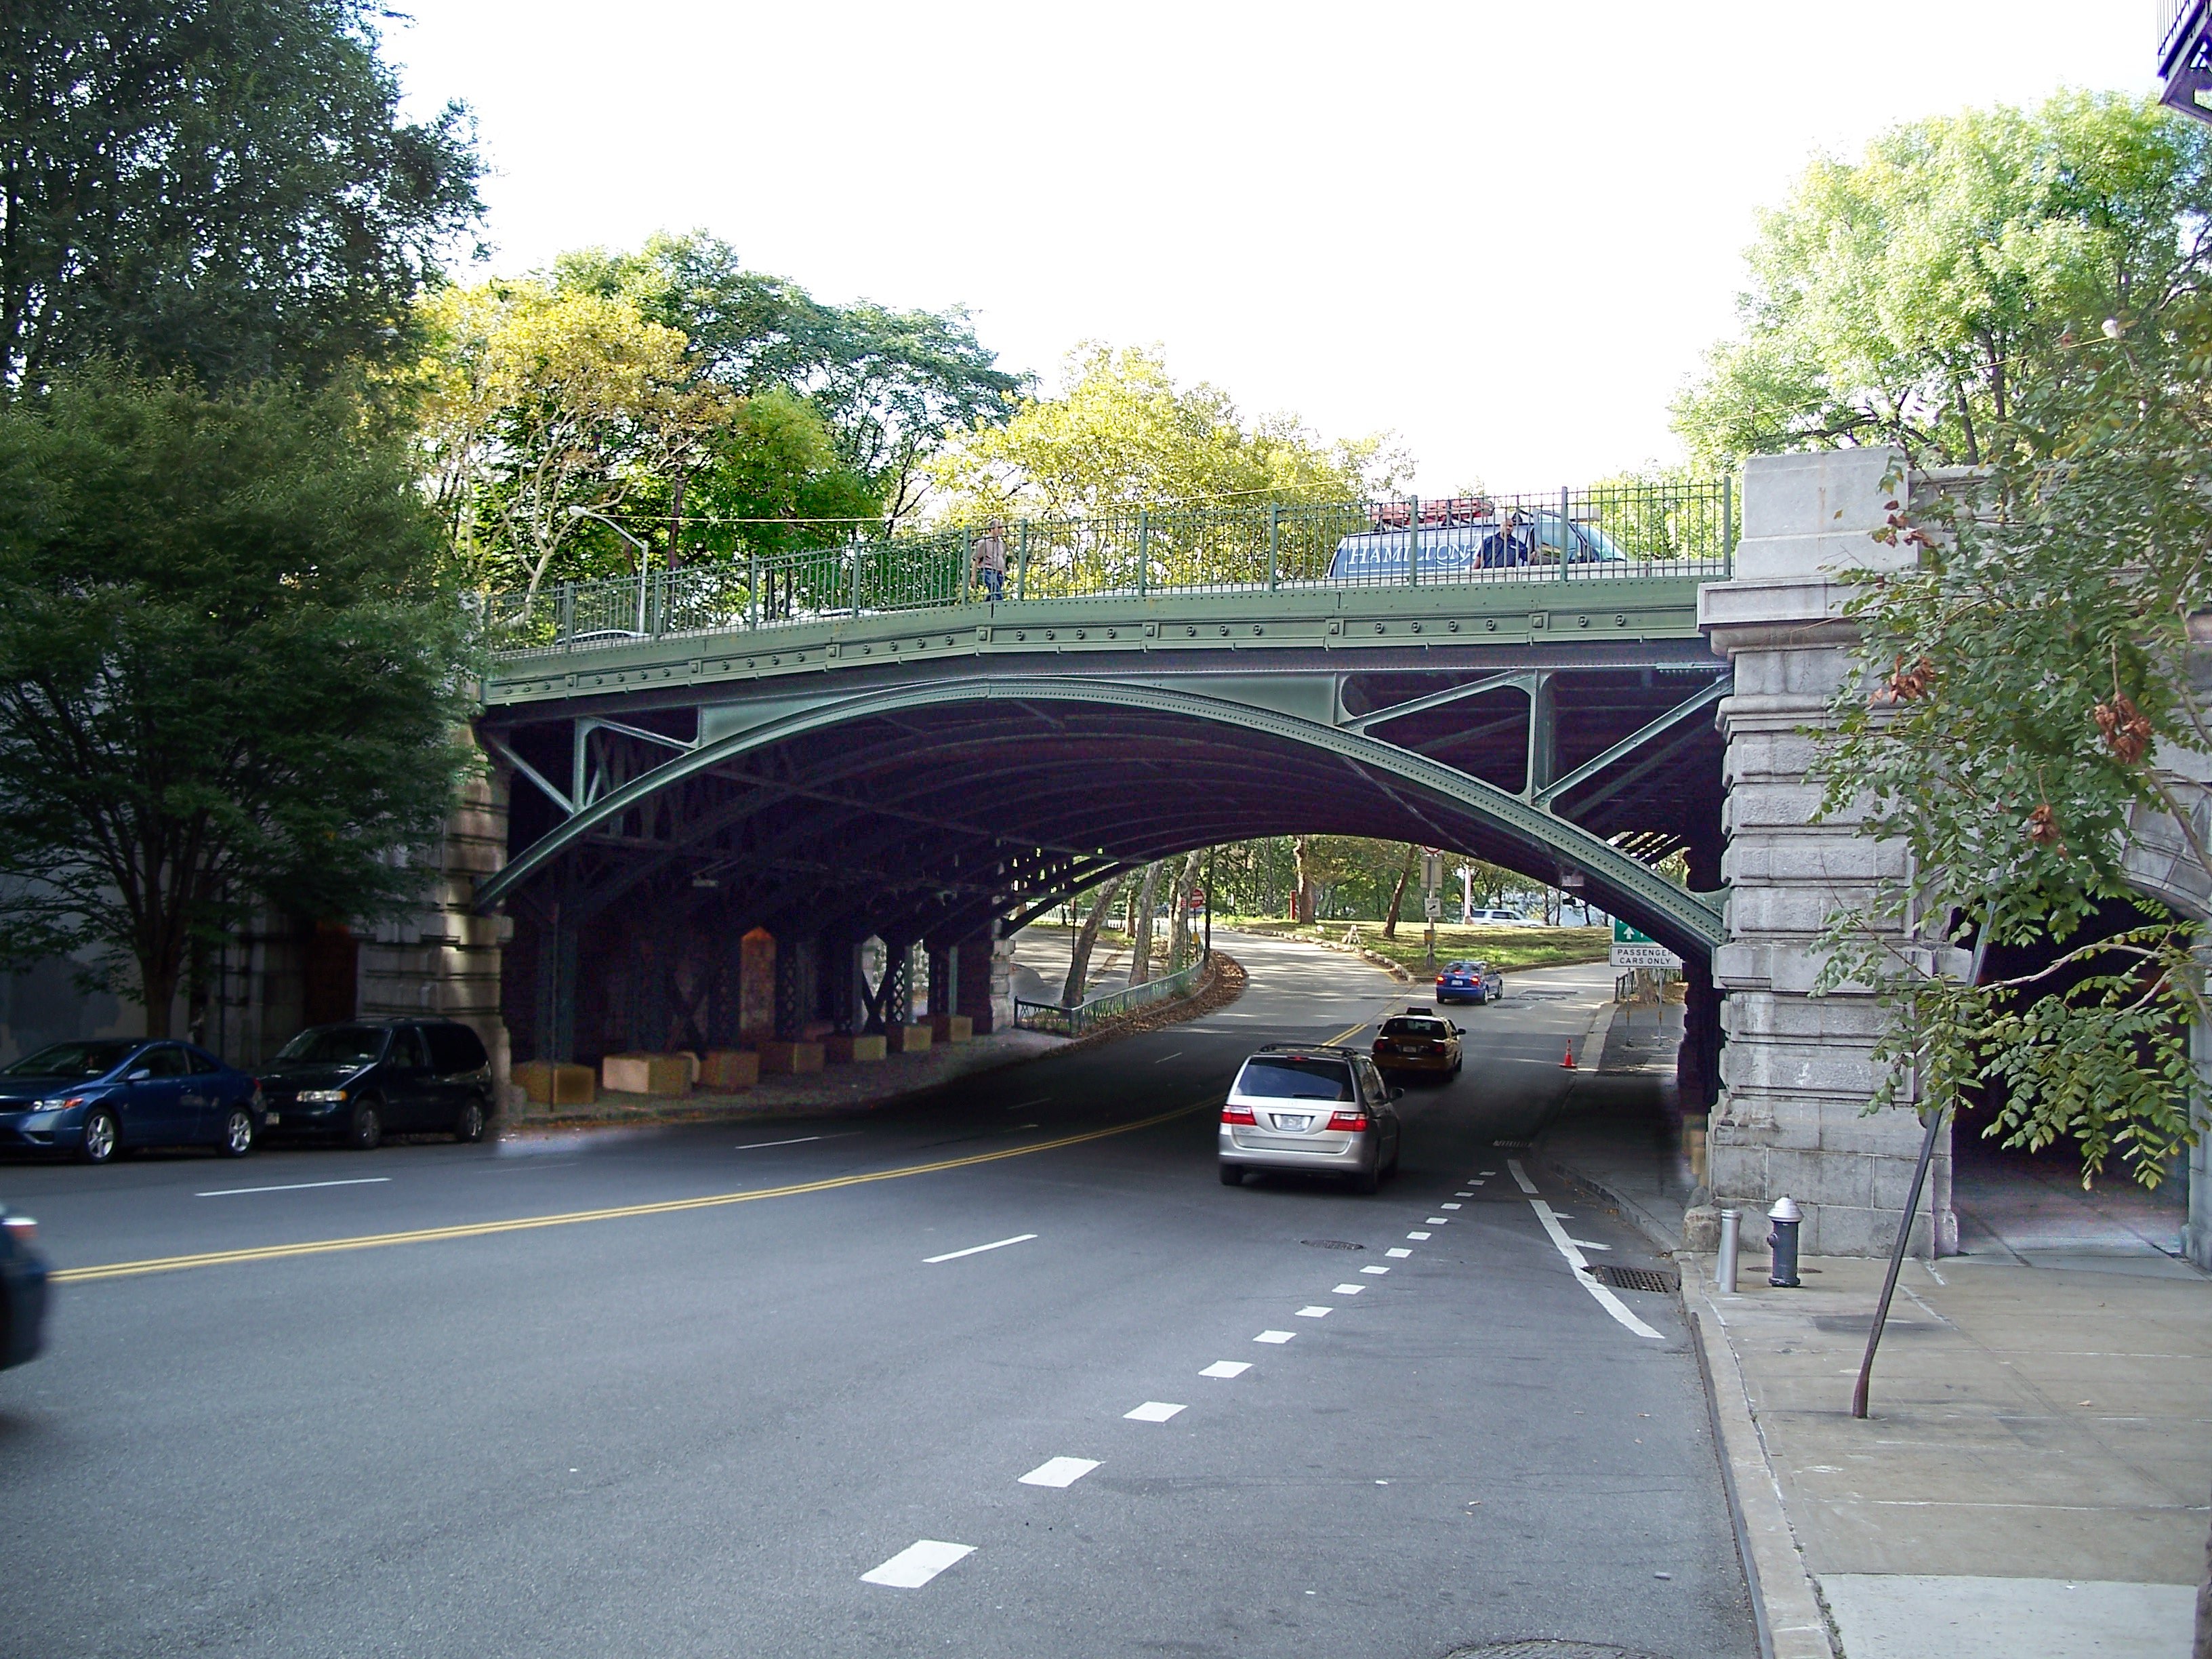 96th Street Bridge